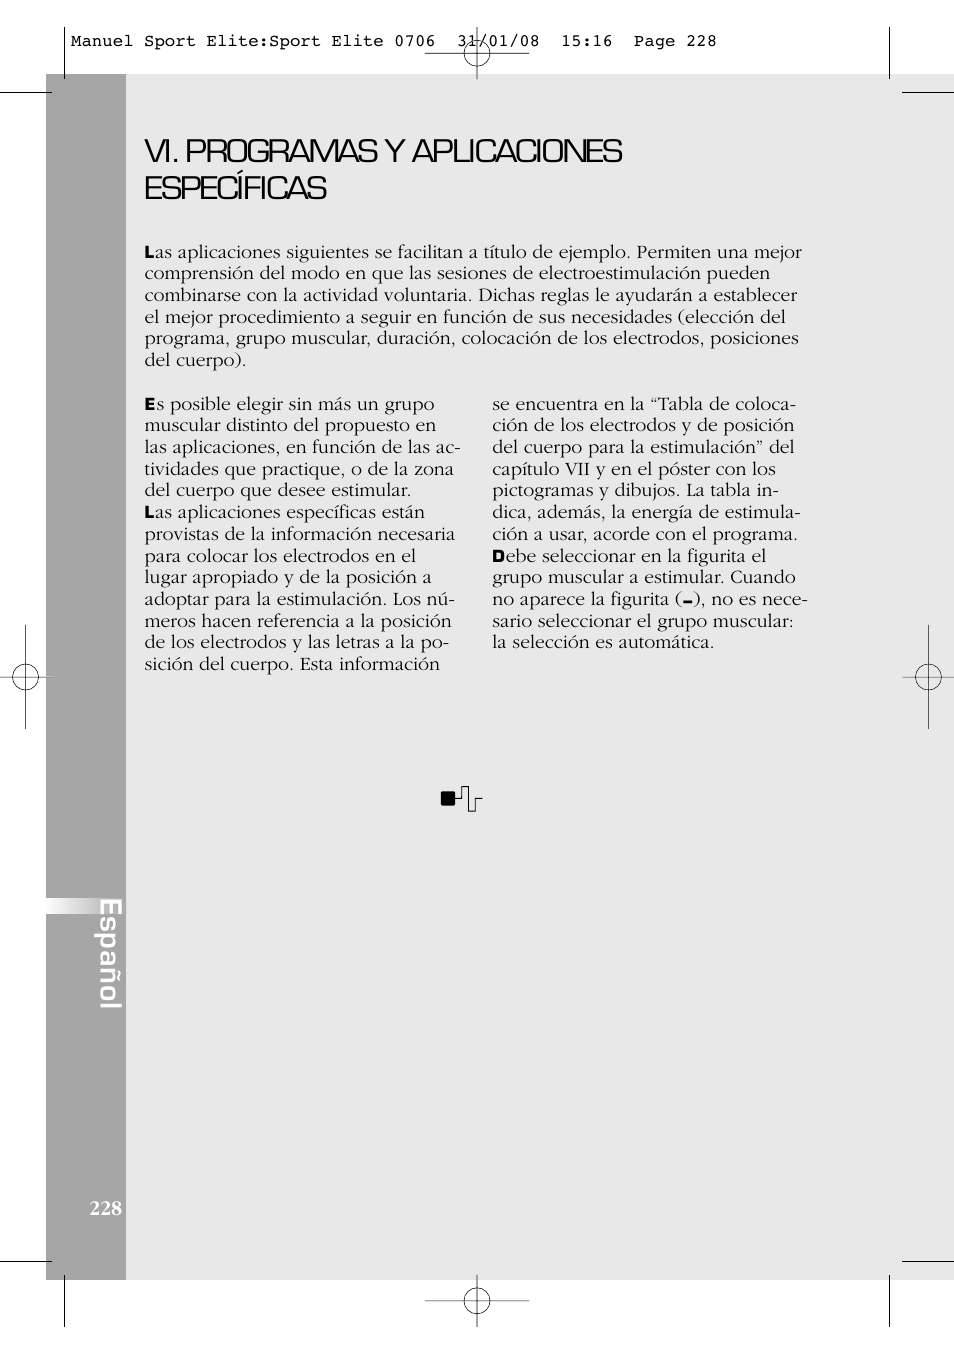 Vi. programas y aplicaciones específicas, Español | Compex Sport Elite User  Manual | Page 228 / 320